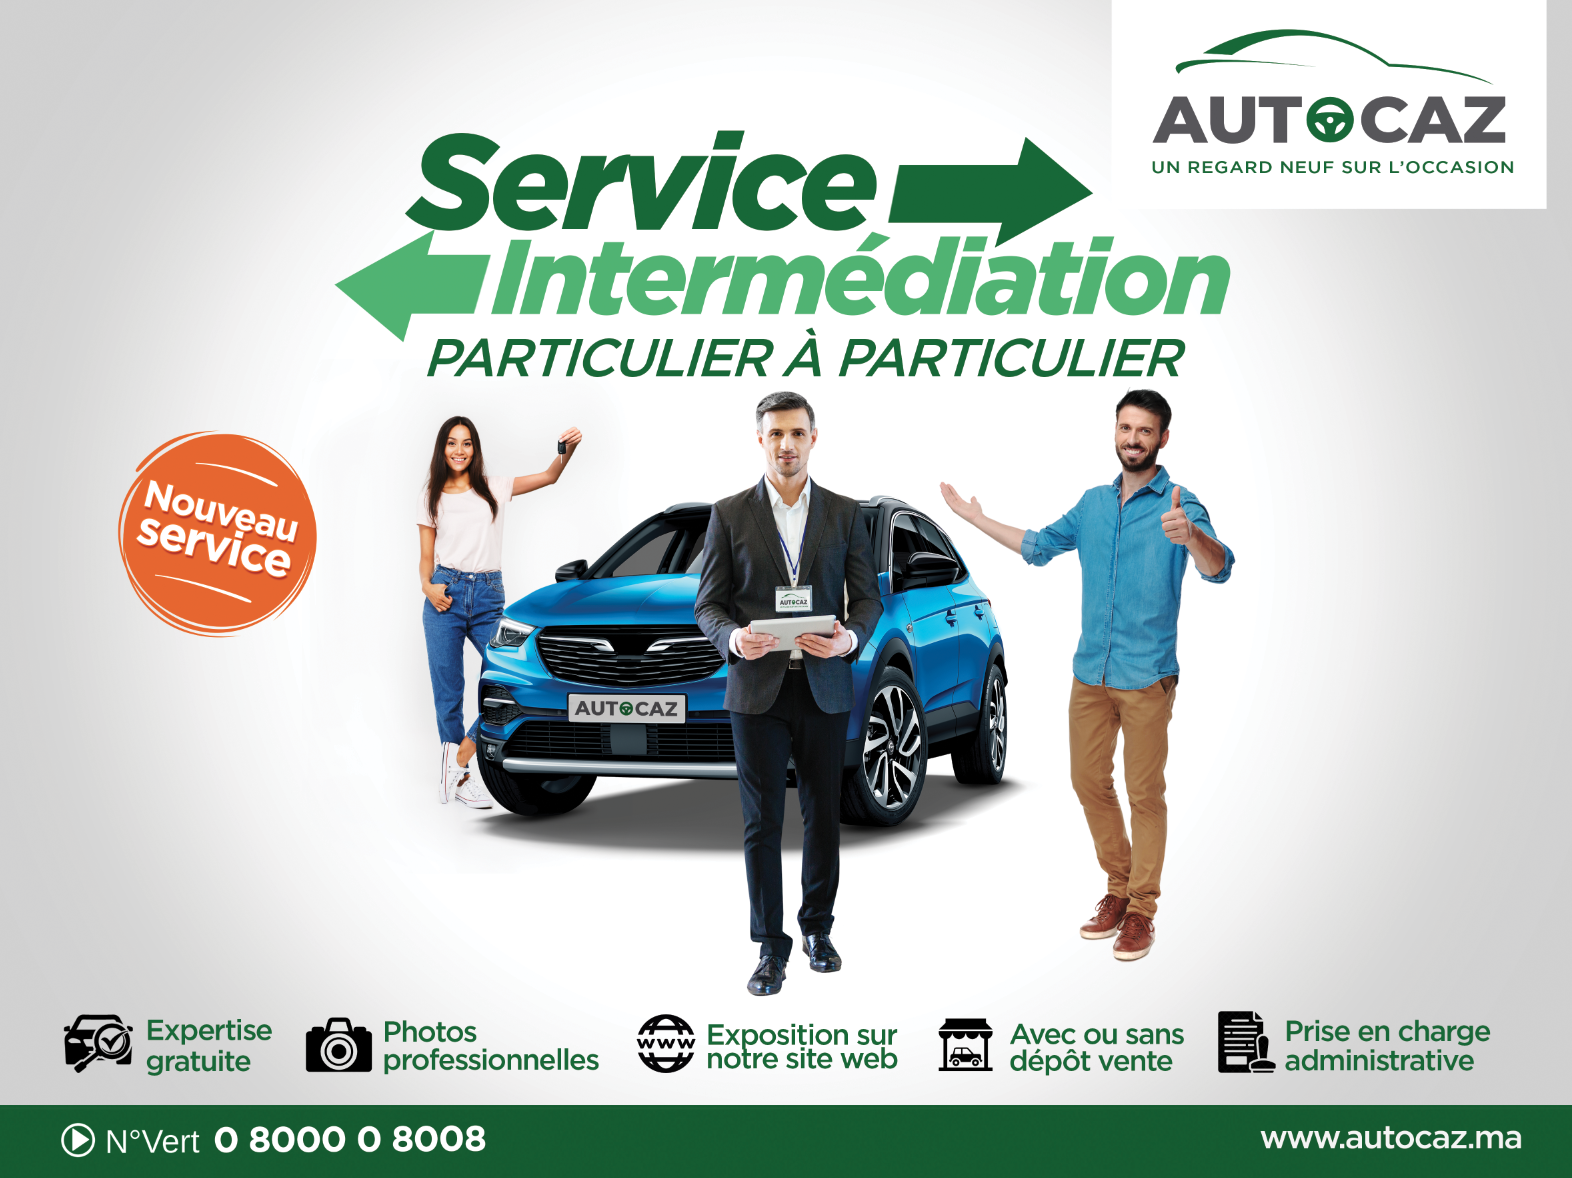 Autocaz célèbre son premier anniversaire et dévoile son nouveau service baptisé « INTERMÉDIATION DE CONFIANCE  »